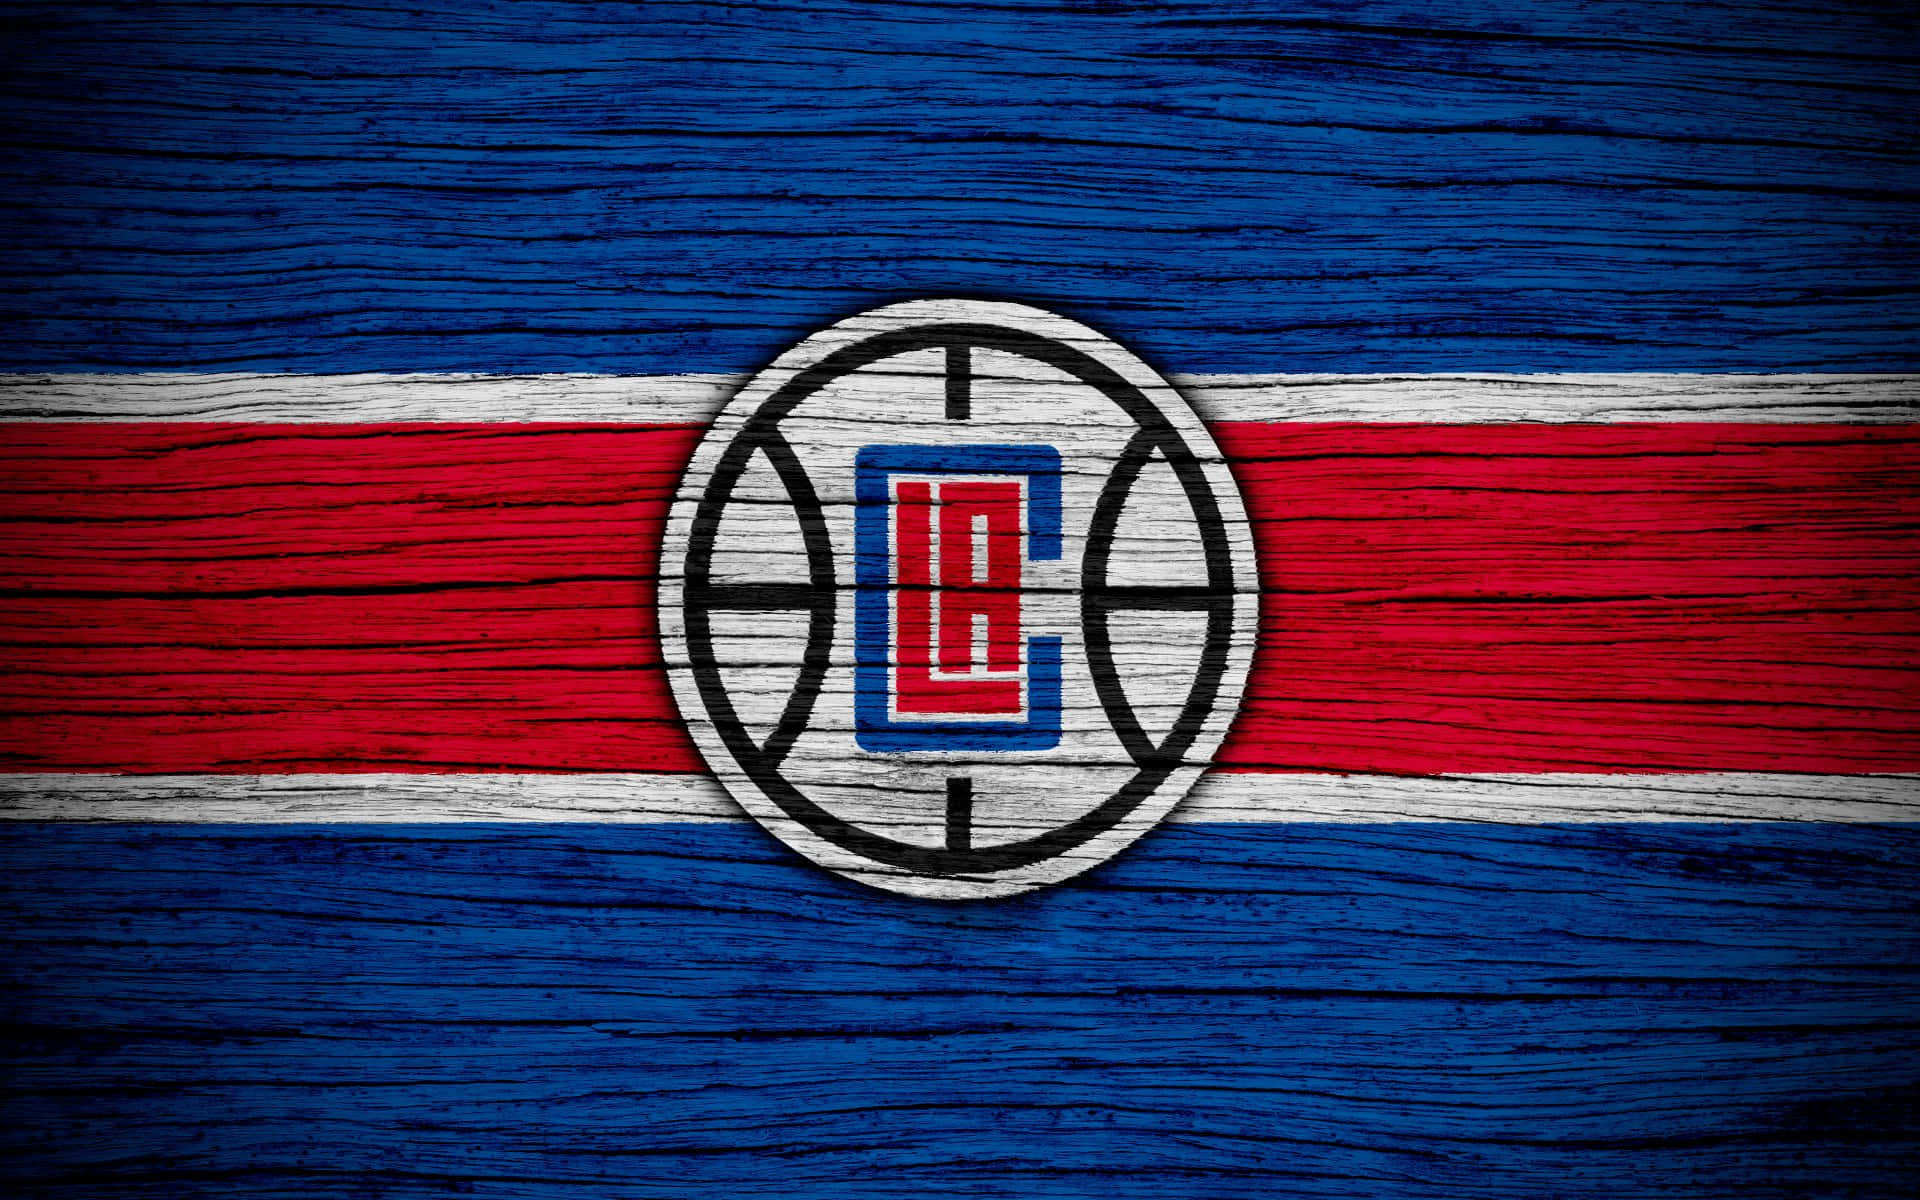 Ilustracióndel Logo De Los La Clippers En Madera Fondo de pantalla